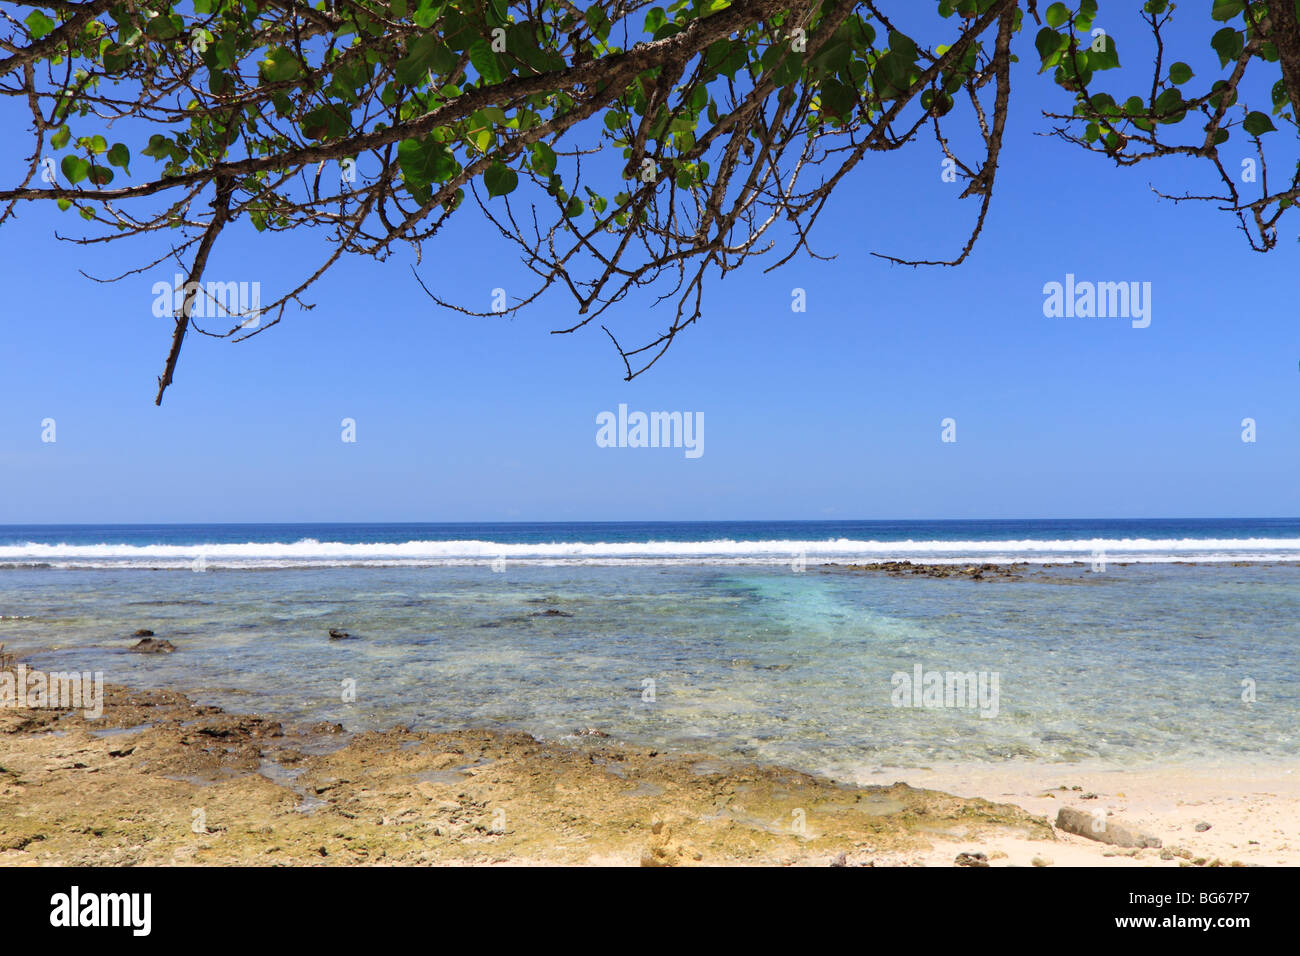 Vue de la plage à l'île de Kandooma, Maldives Banque D'Images